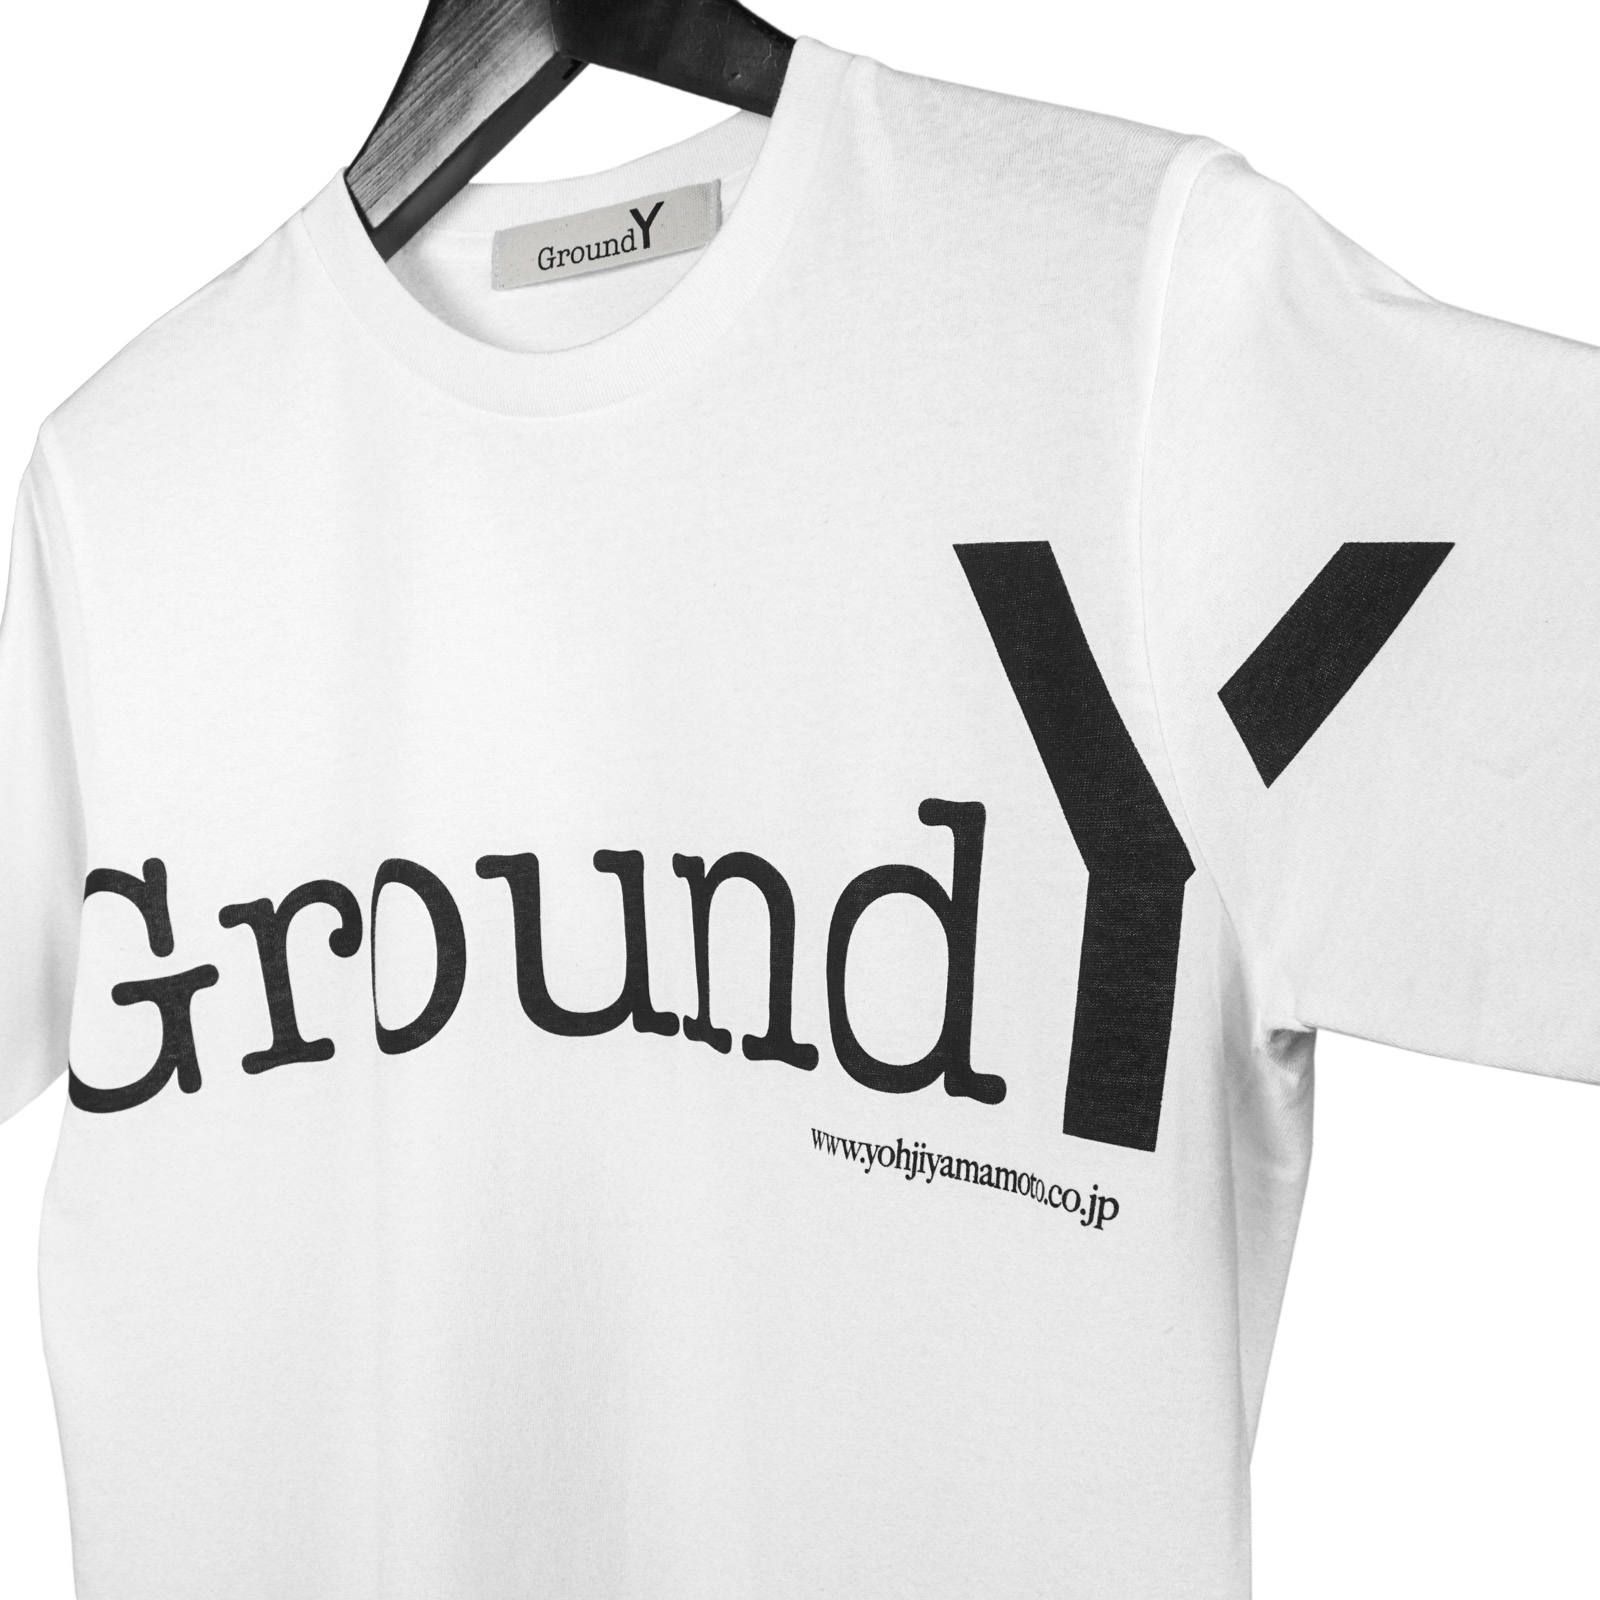 Ground Y - Ground Y [GA-T57-070-1 / GYロゴグラフィック半袖